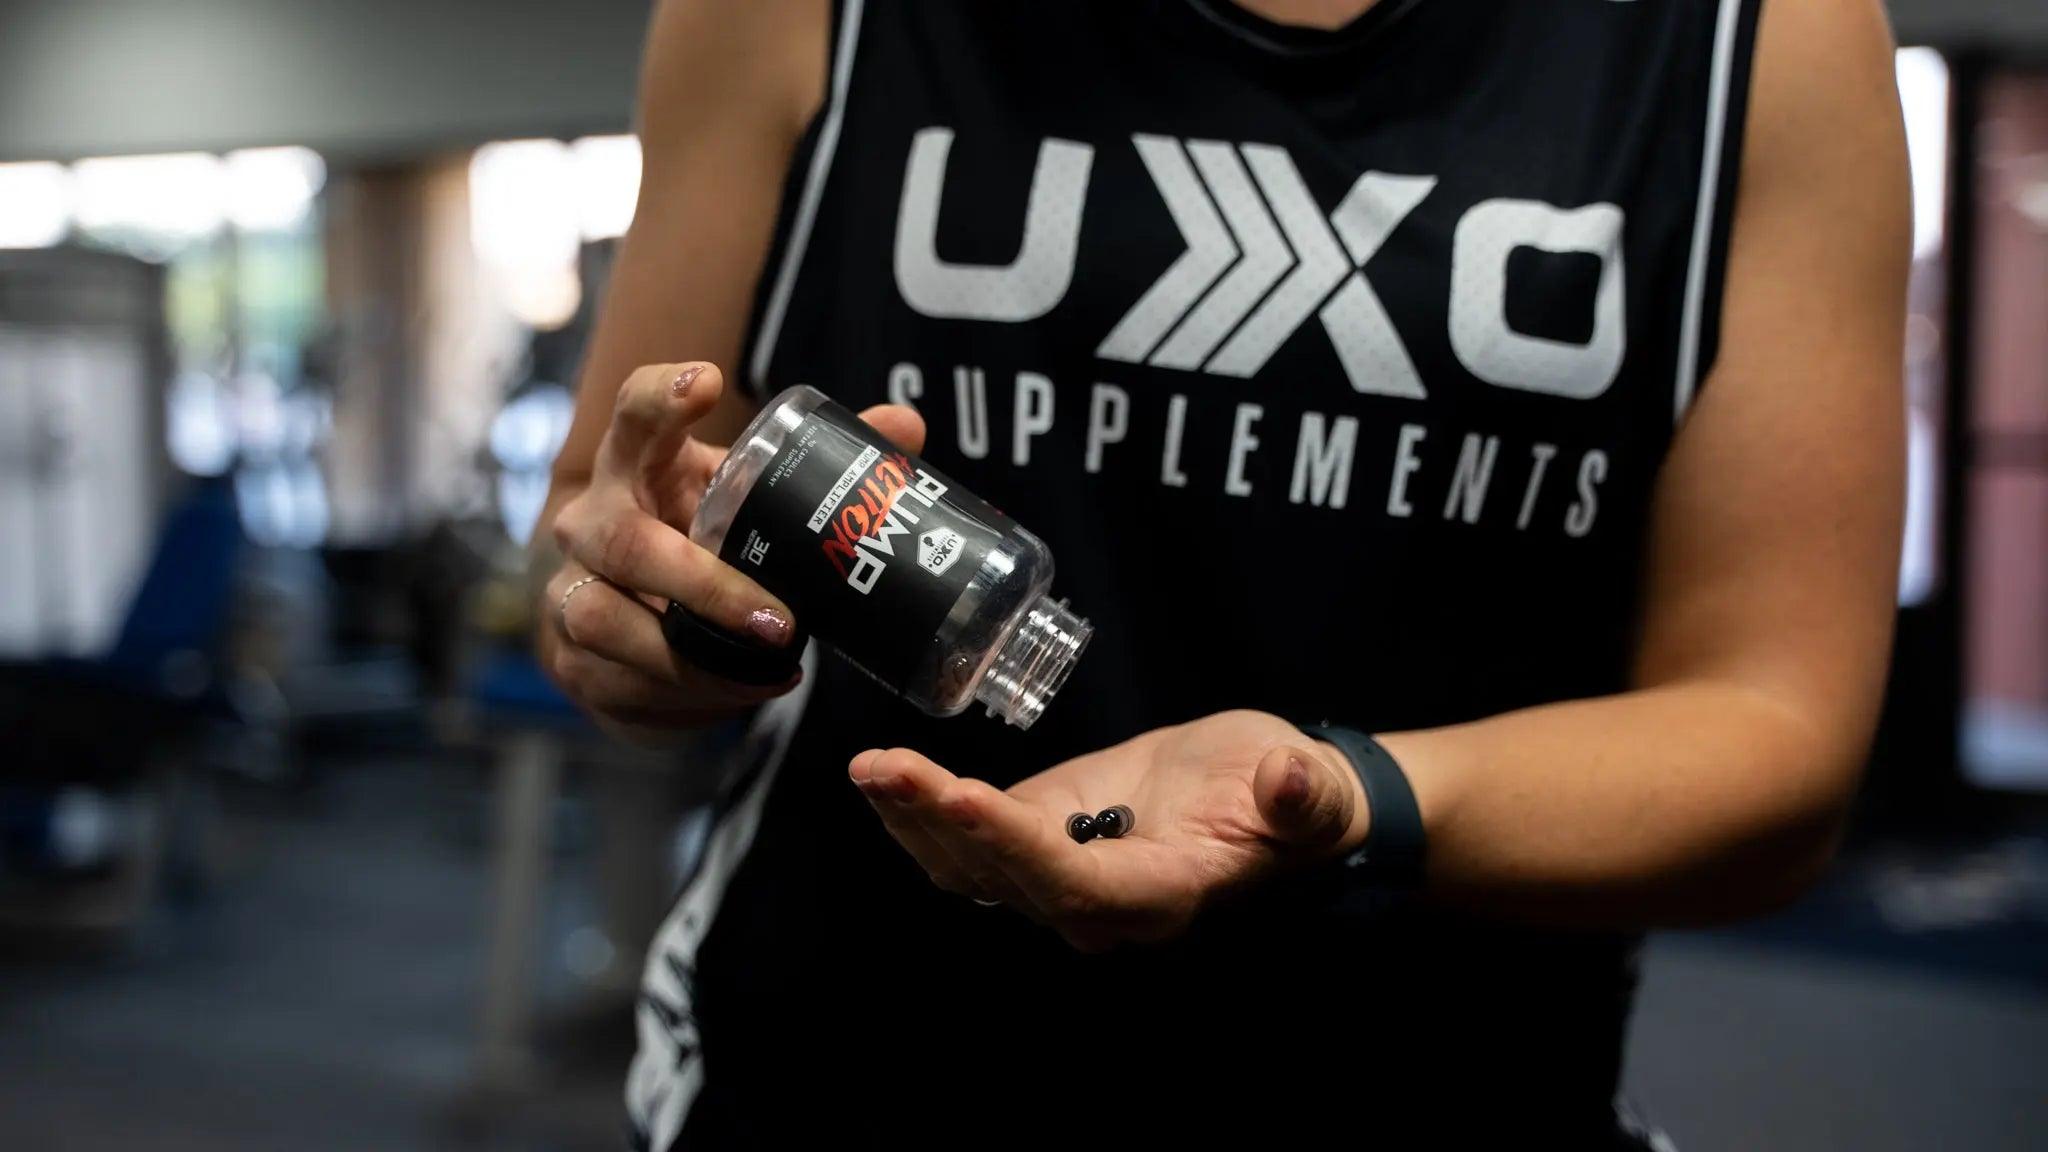 VasoDrive-AP-The-Ultimate-Pump-Ingredient UXO Supplements